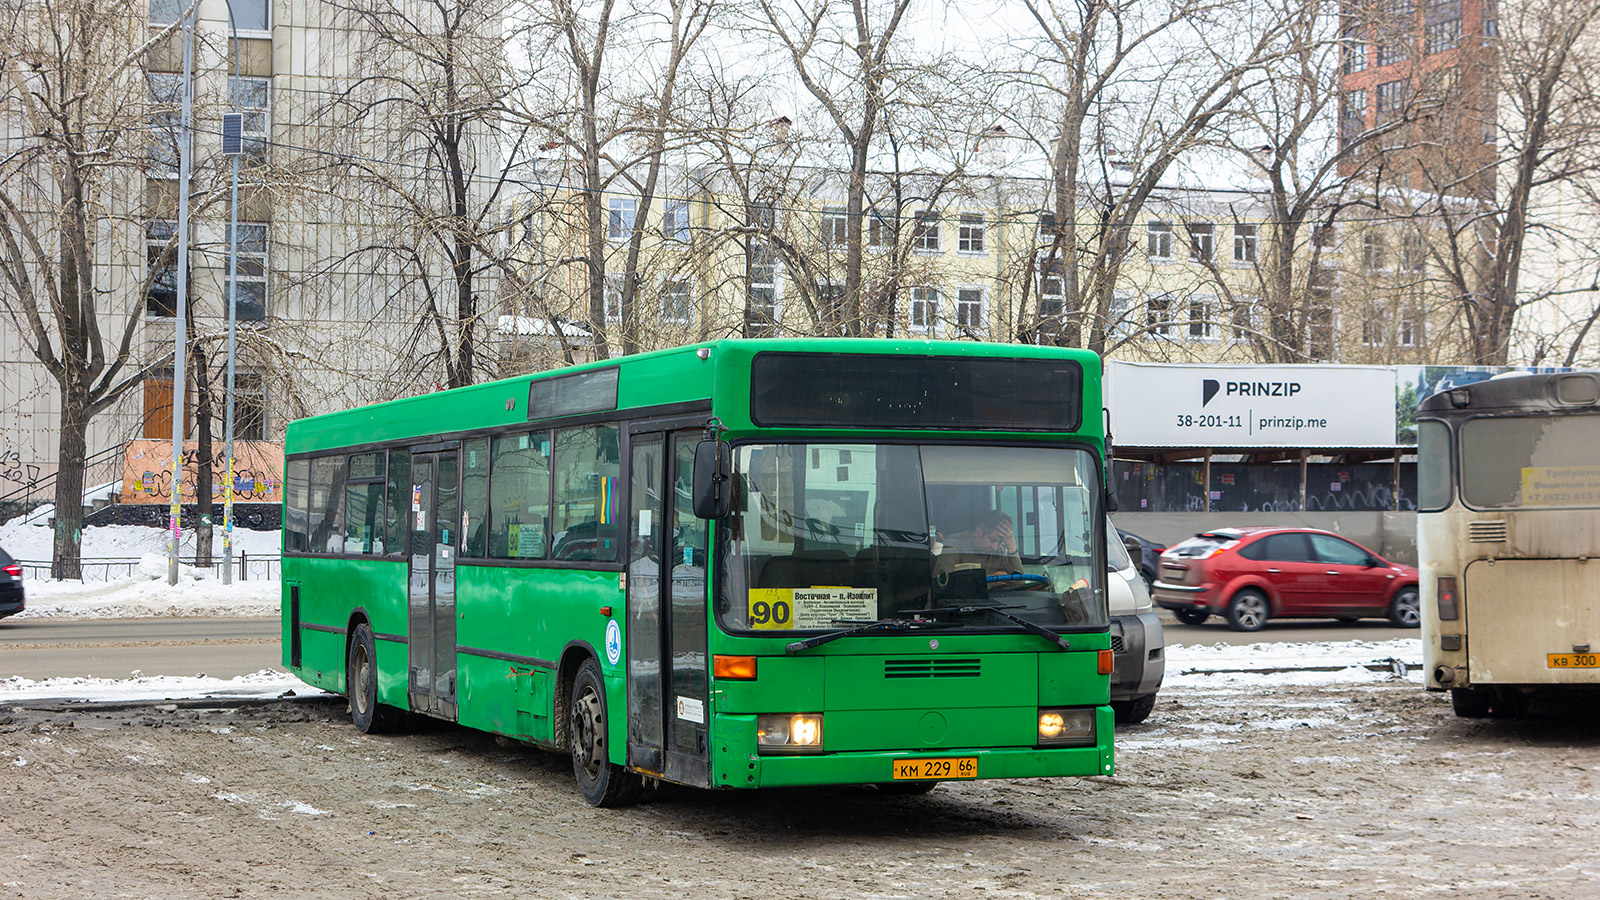 Свердловская область, Mercedes-Benz O405N № КМ 229 66